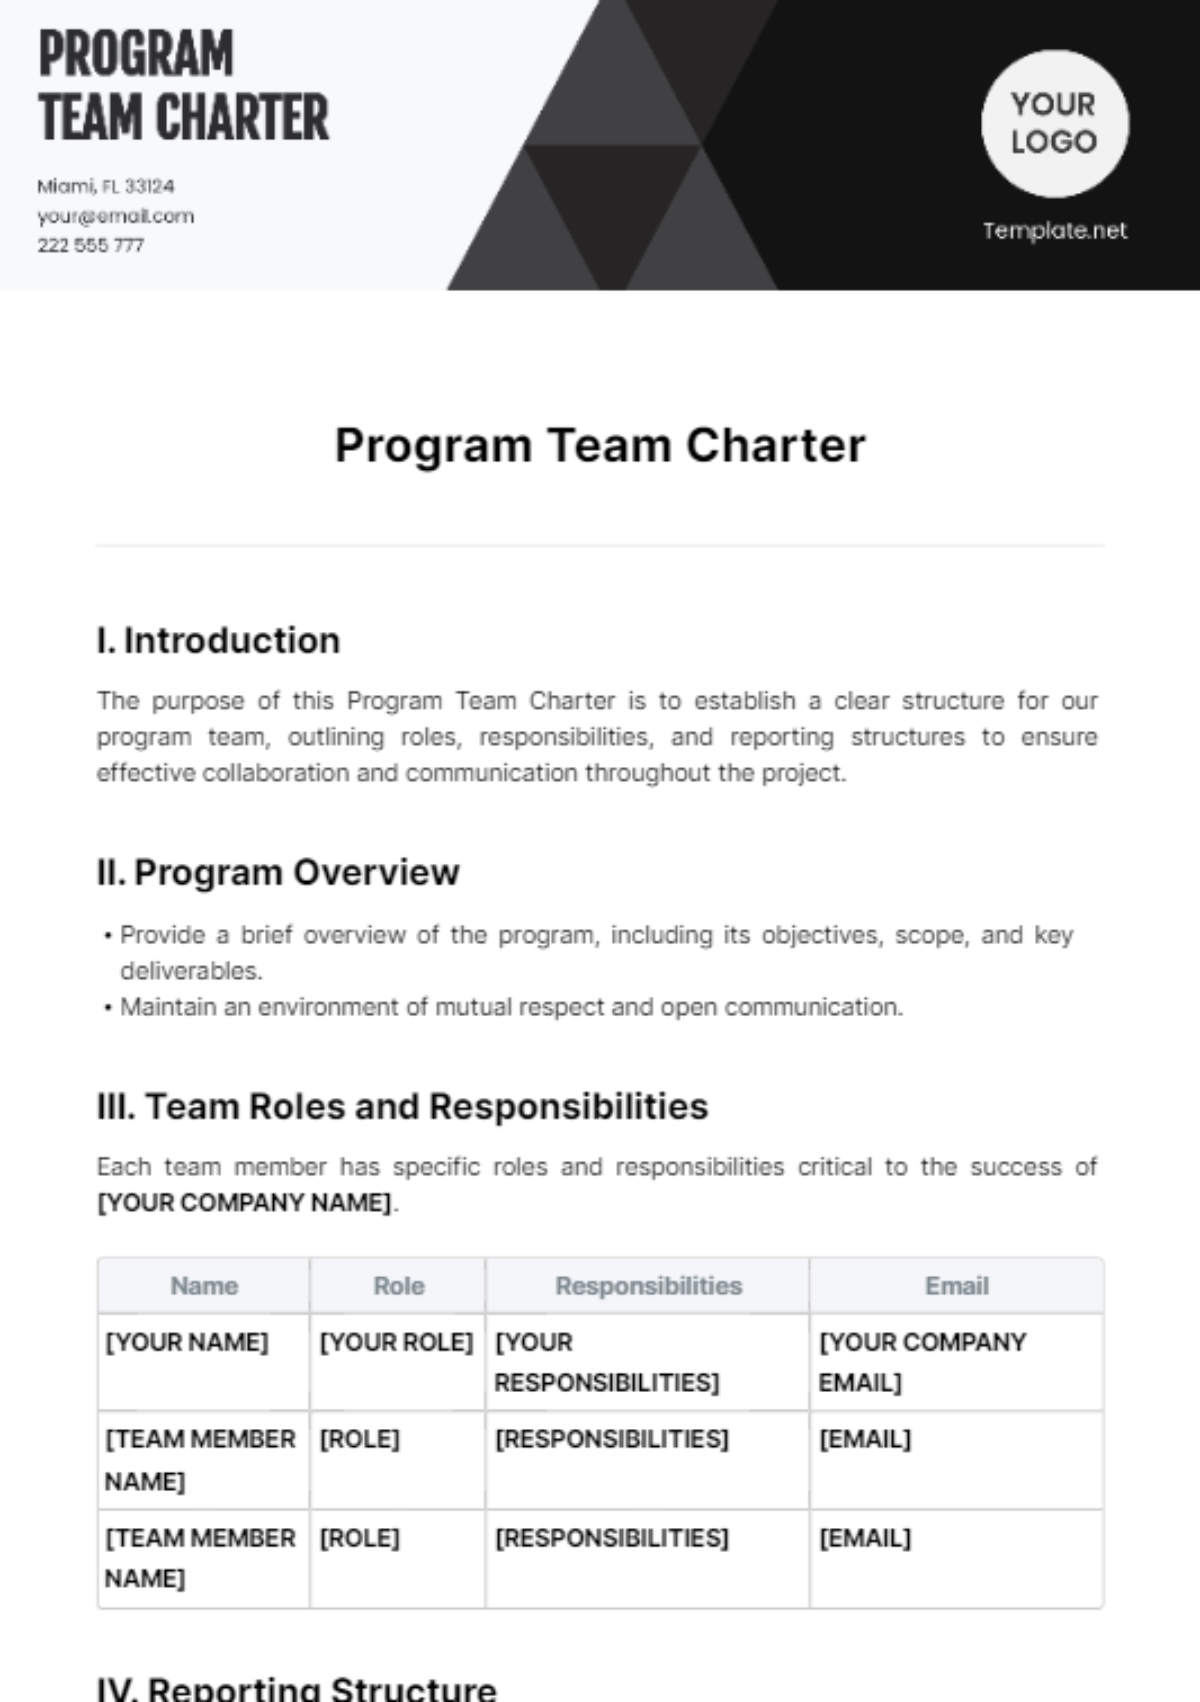 Program Team Charter Template